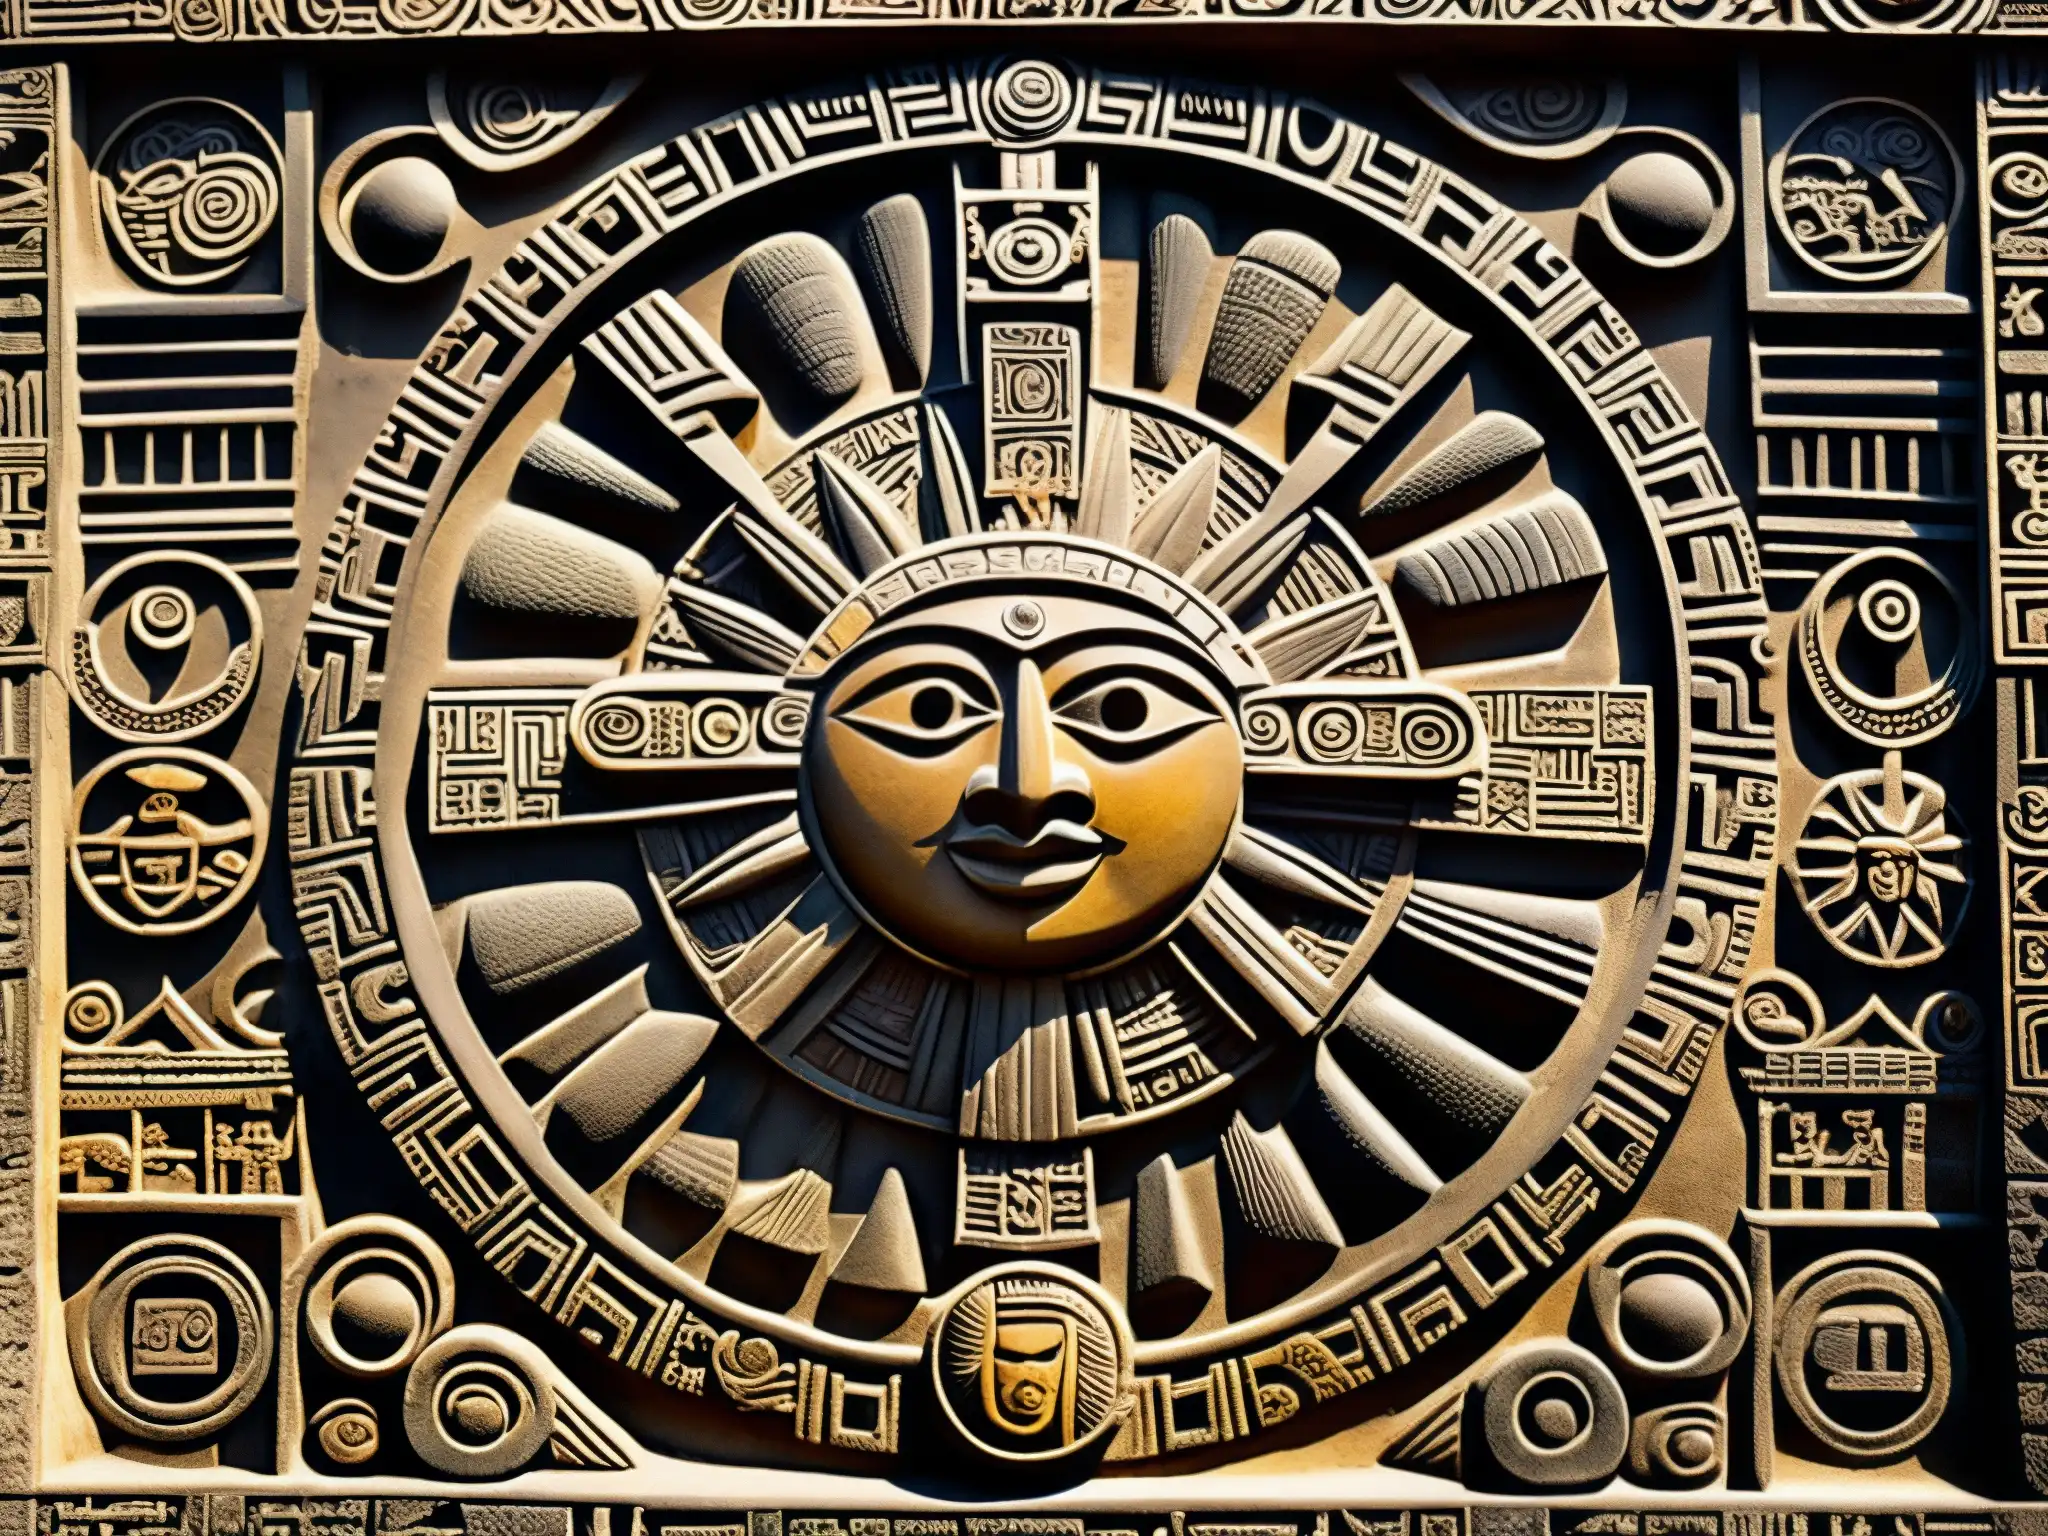 Relieve de piedra azteca mostrando la cosmovisión y romance de la leyenda del Sol y la Luna, con detalles intrincados y simbolismo cósmico